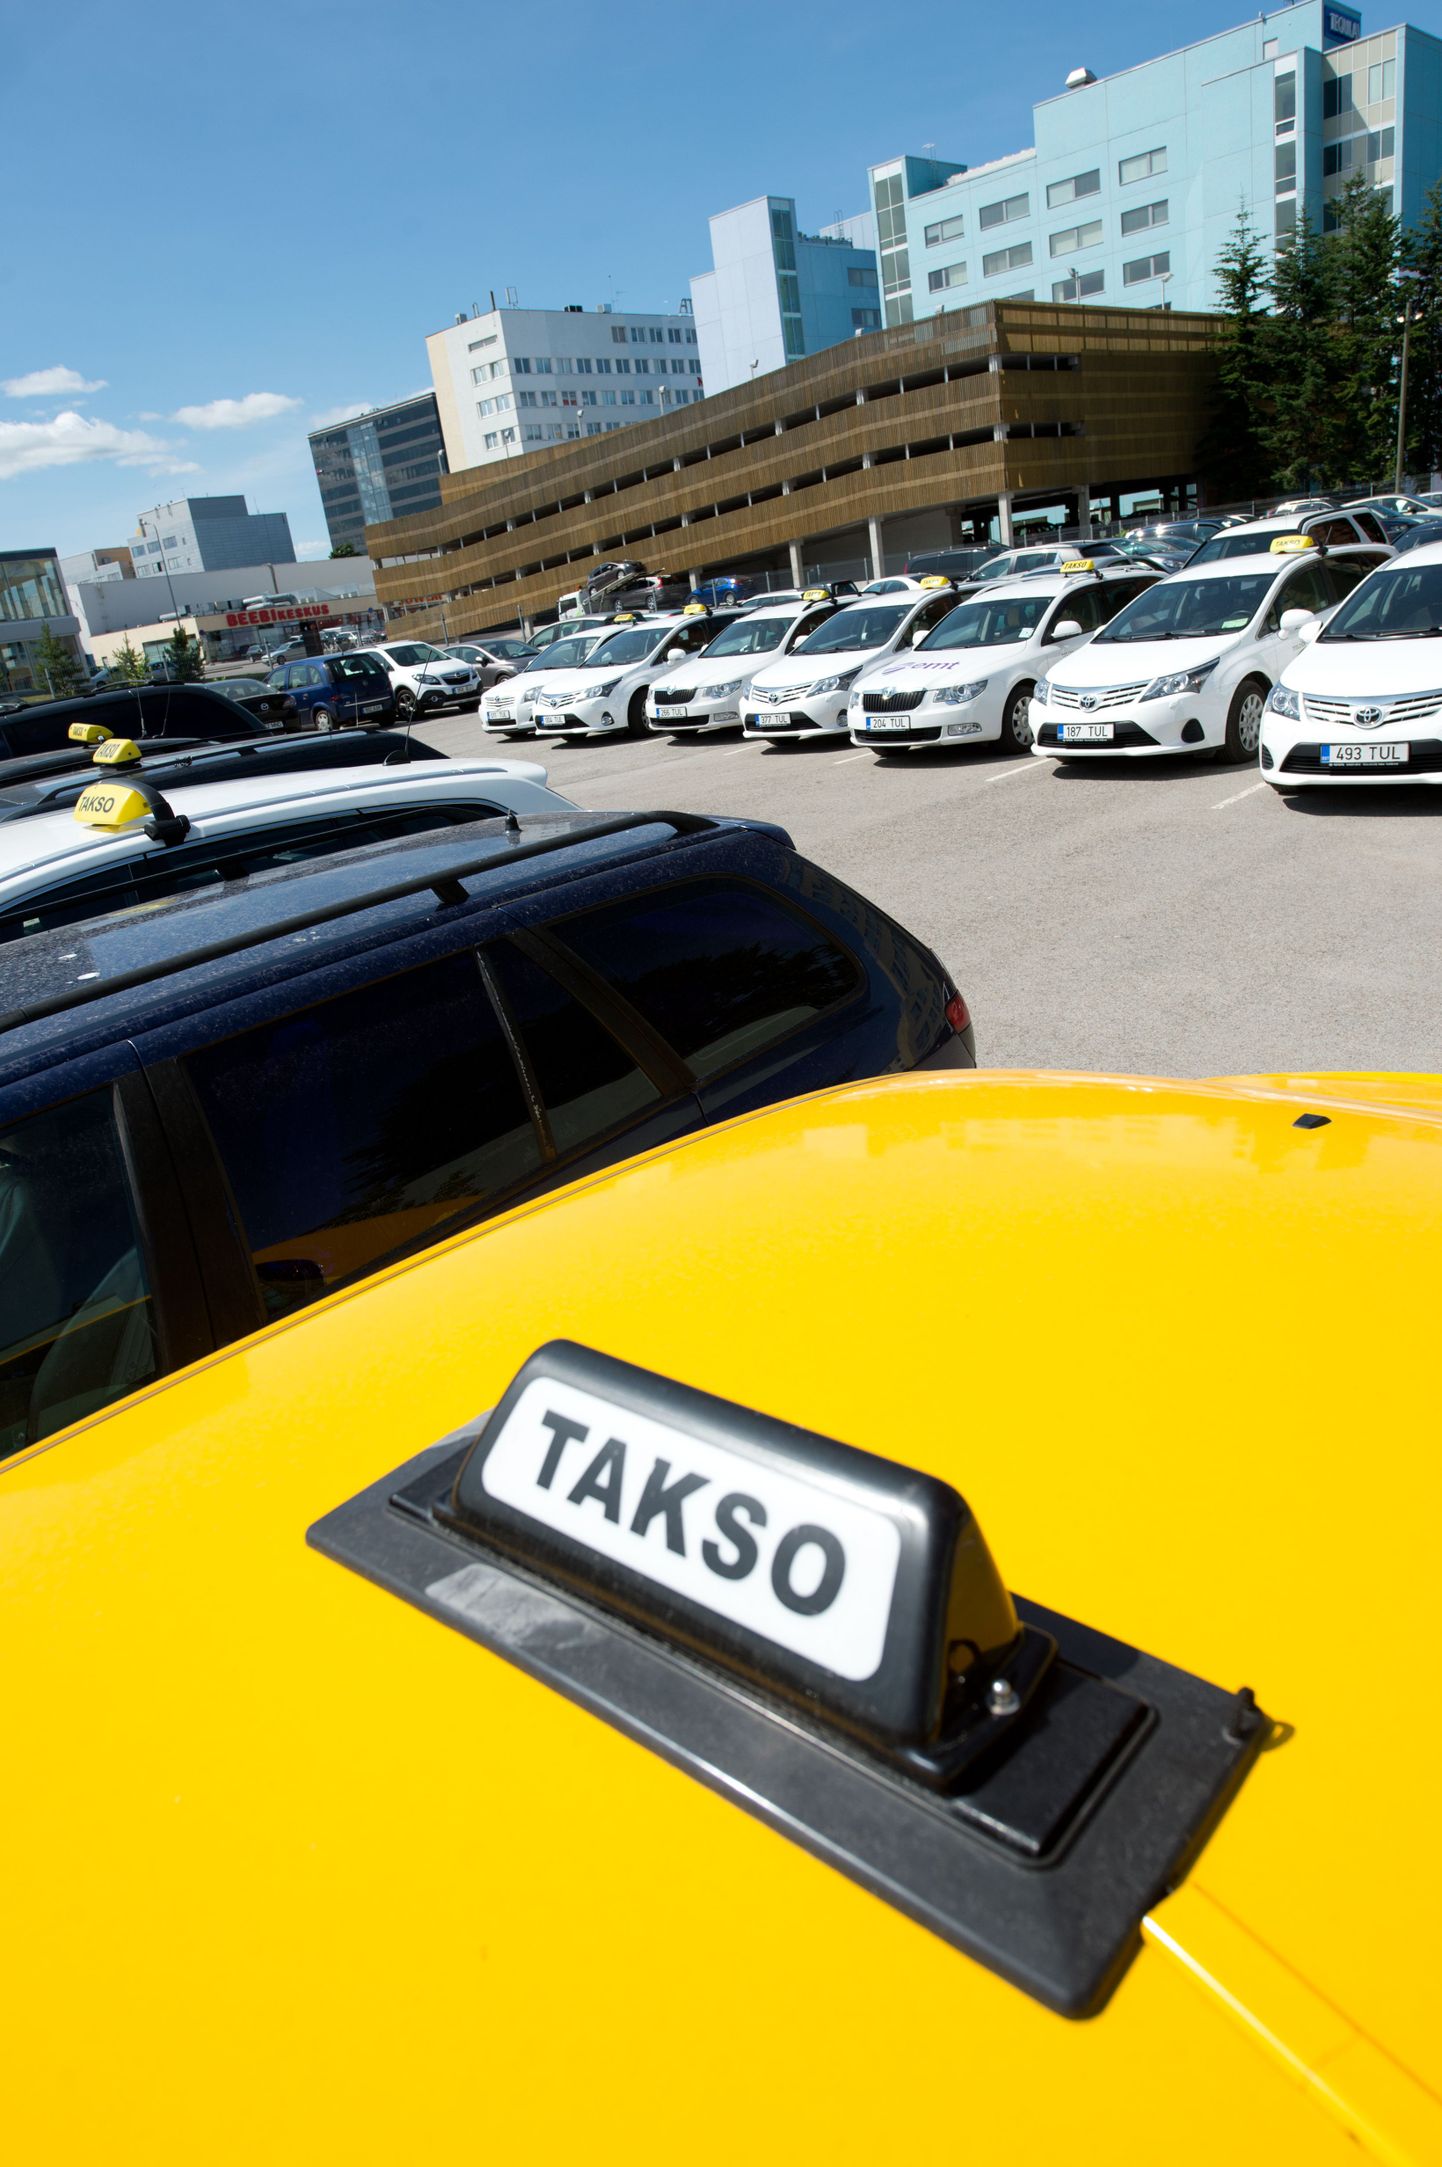 Taksojuhid ei pea enam teenindajakaardi saamiseks keelenõude täitmist tõendavad dokumenti näitama.